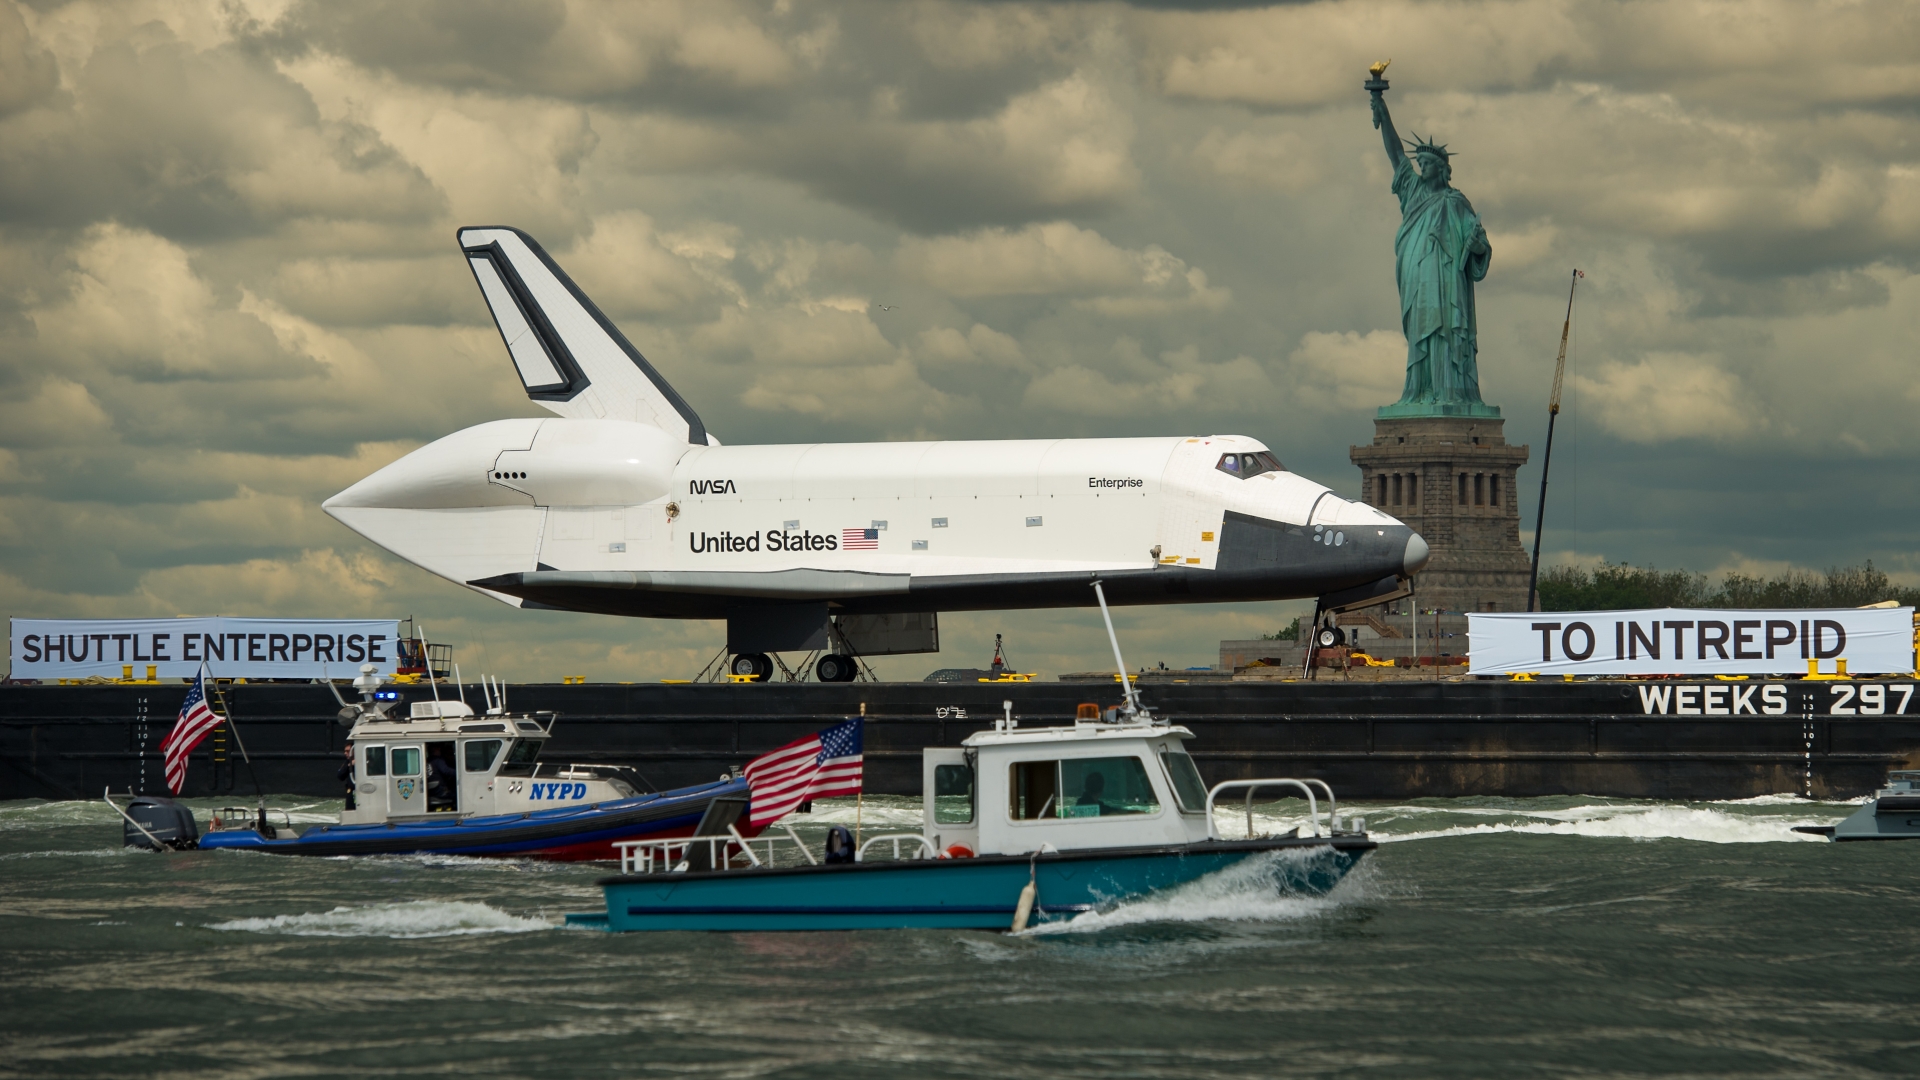 Space Shuttle Enterprise  Free Stock Photos